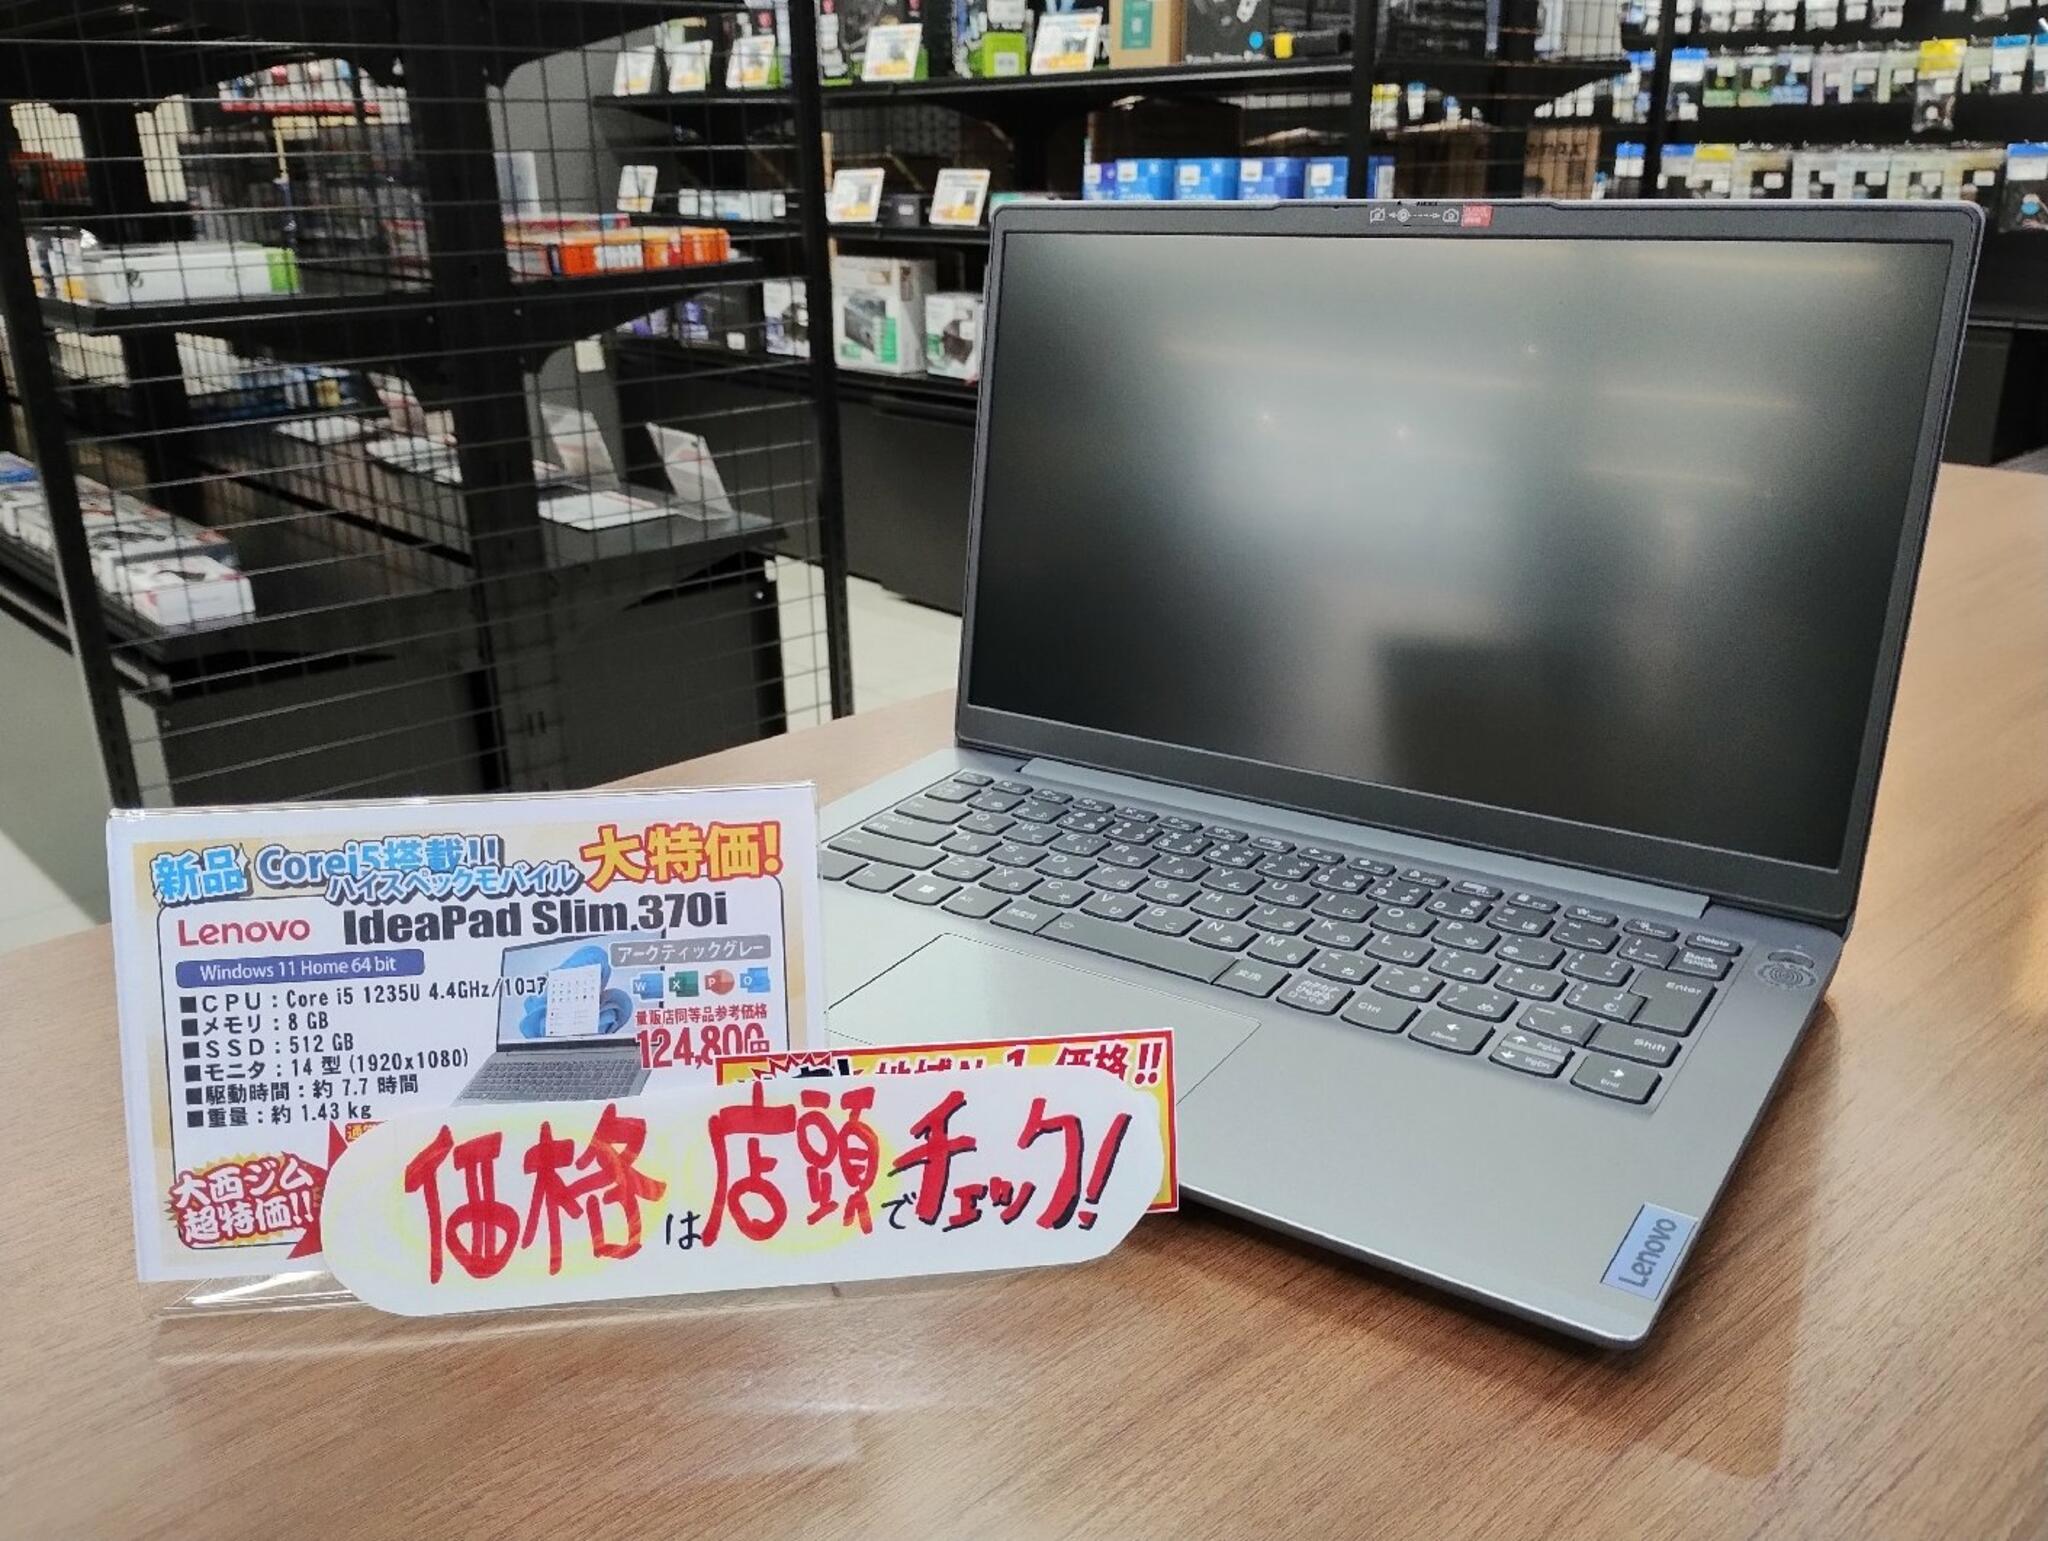 パソコン専門店 大西ジム 新長田店からのお知らせ(14型ハイスペックノート「IdeaPad Slim 370i」入荷しました！)に関する写真